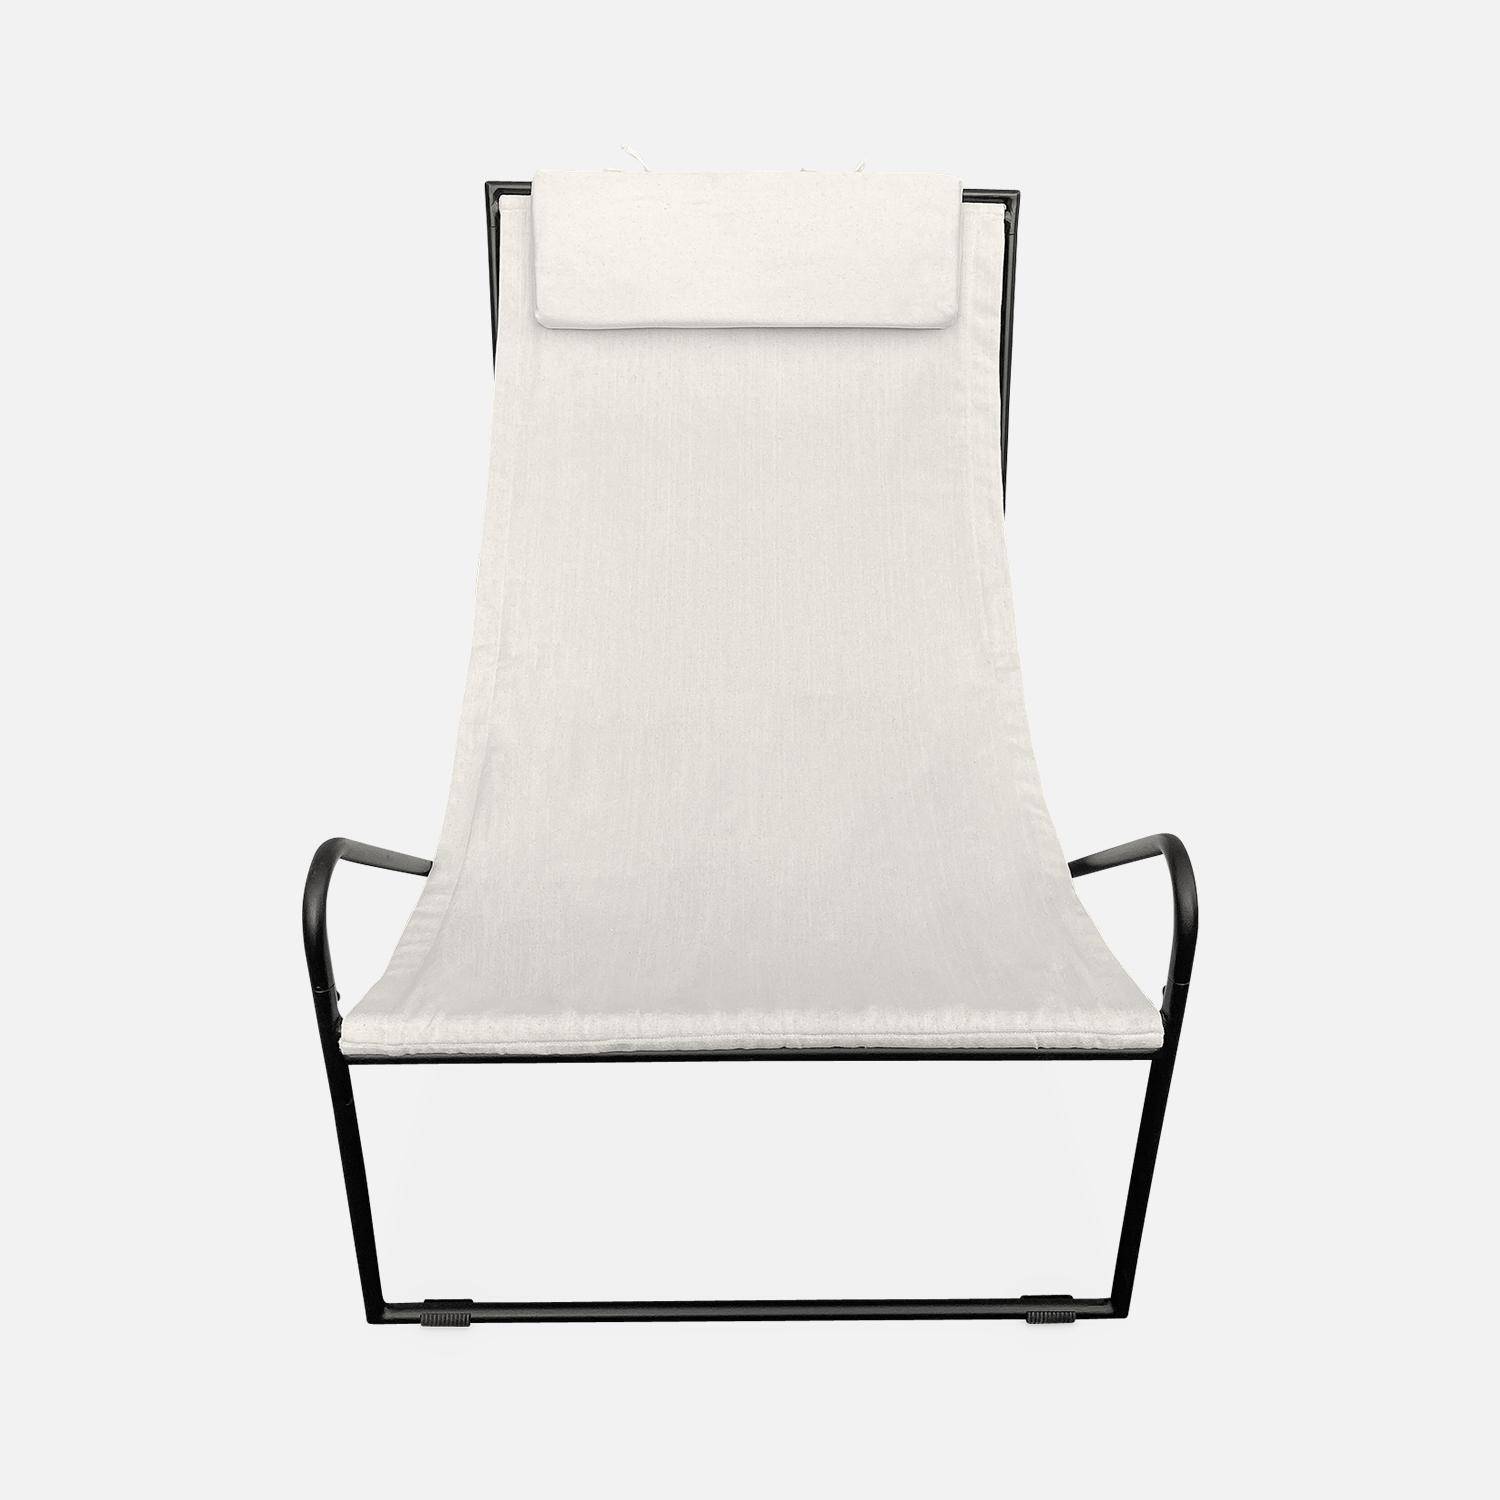 Juego de 2 sillones reclinables con estructura de metal, asiento y reposacabezas de tela  Photo6